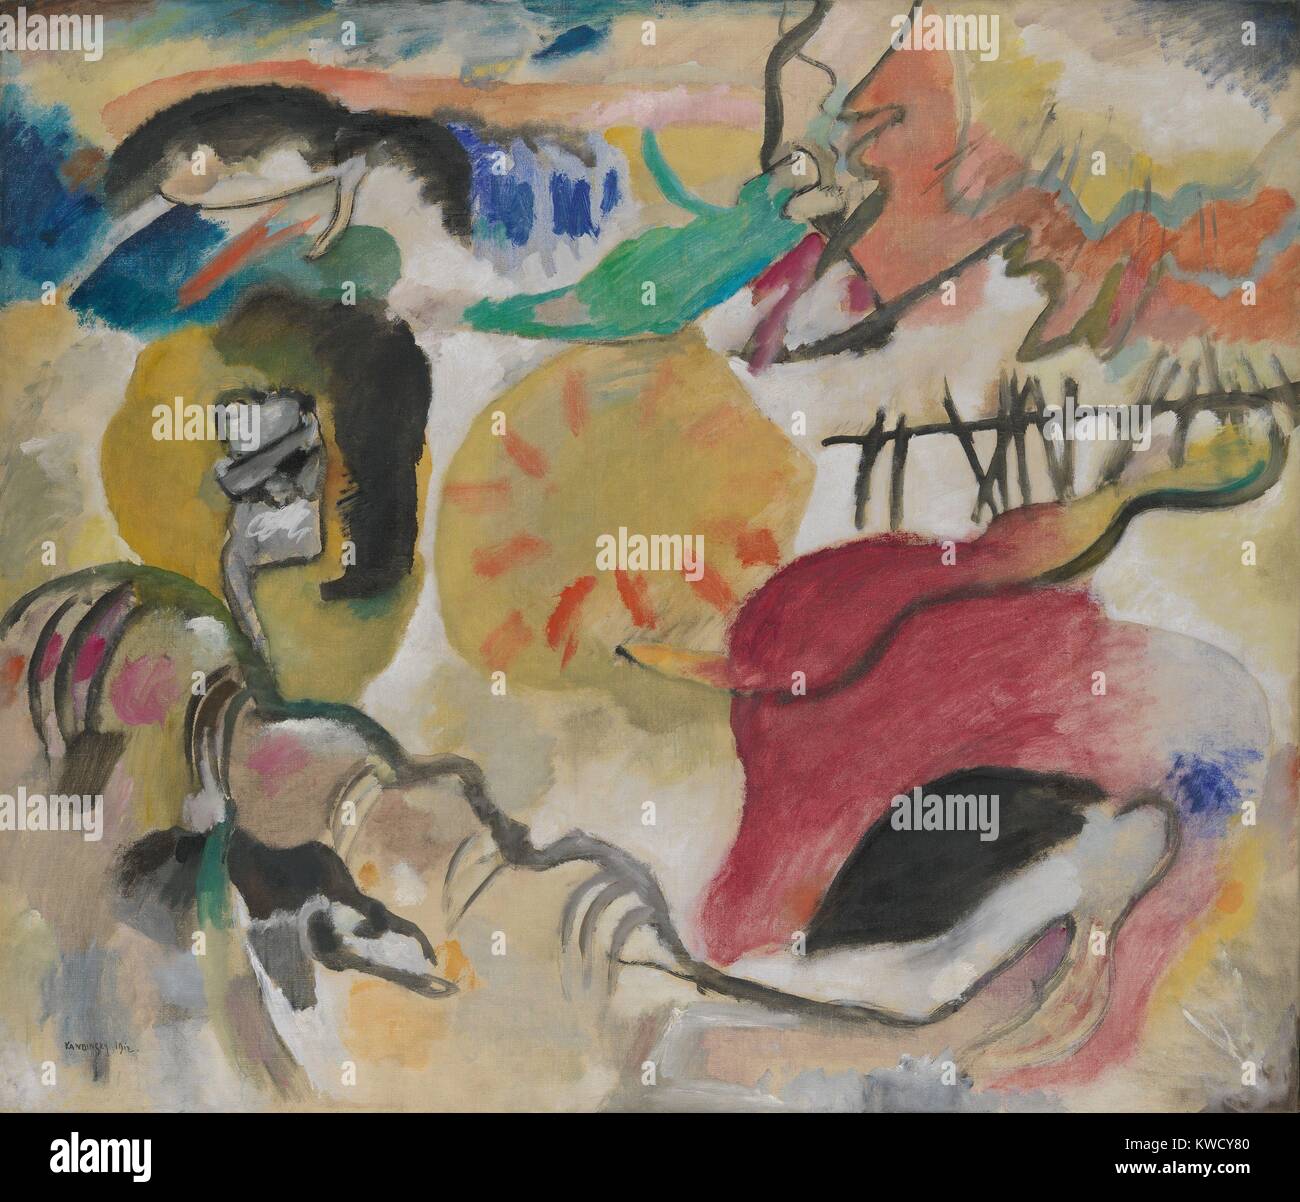 Improvisation 27 (Garten der Liebe II), die von Wassily Kandinsky, 1912, Russisch deutscher Expressionisten. Dieses Bild enthält 3 sehr abstrakten Darstellungen ein umfassendes Paar von serpentin Formen umgeben. Untertitel der Malerei ist ein Verweis auf die biblische Eden (BSLOC 2017 5 143) Stockfoto